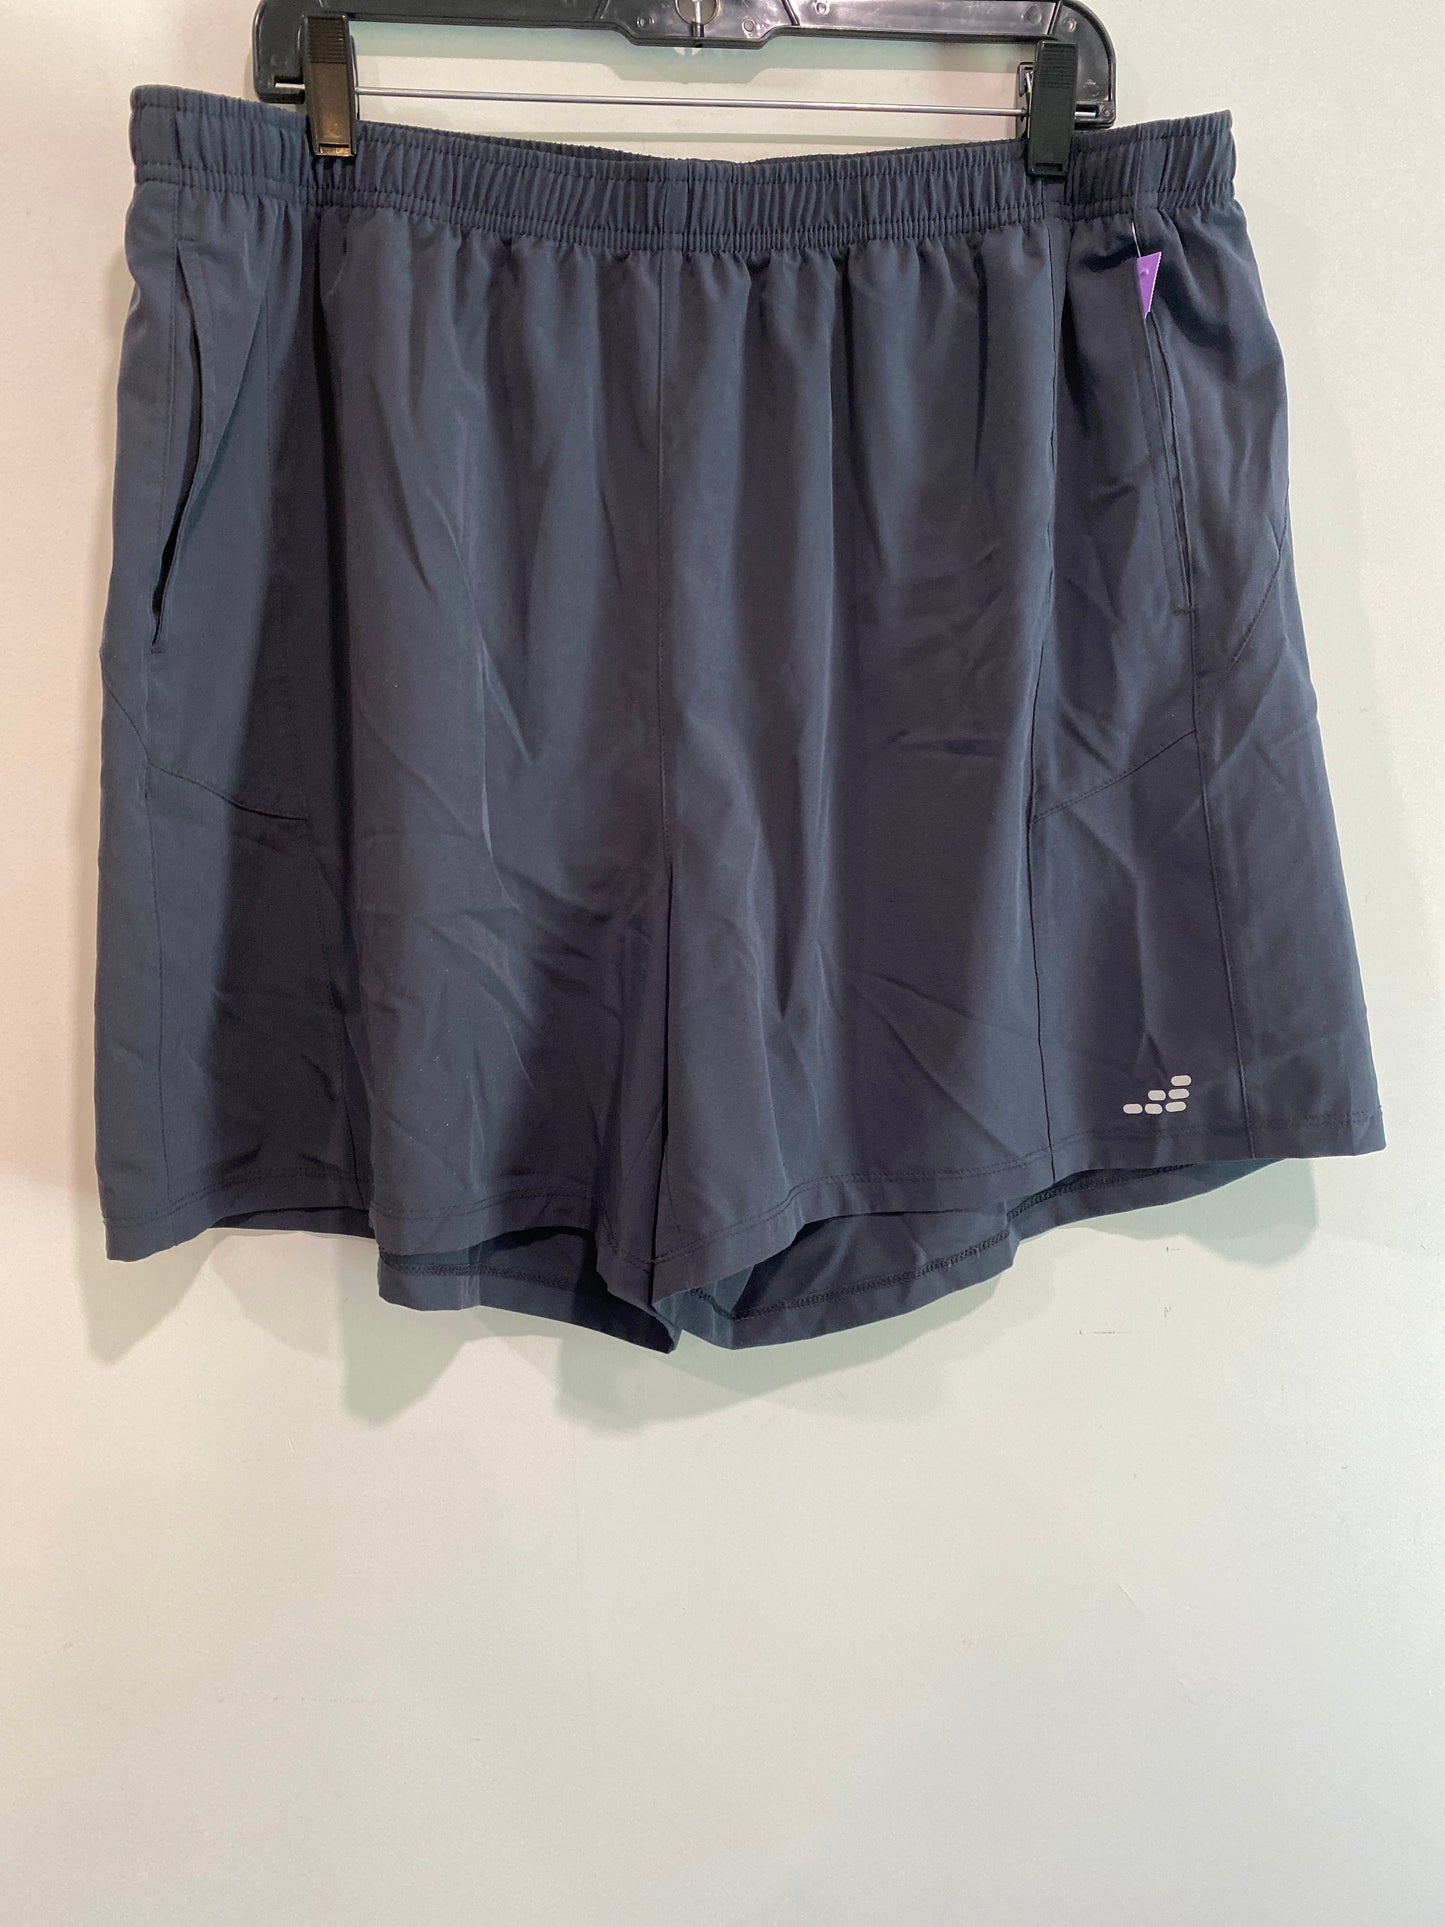 Grey Athletic Shorts Bcg, Size 1x